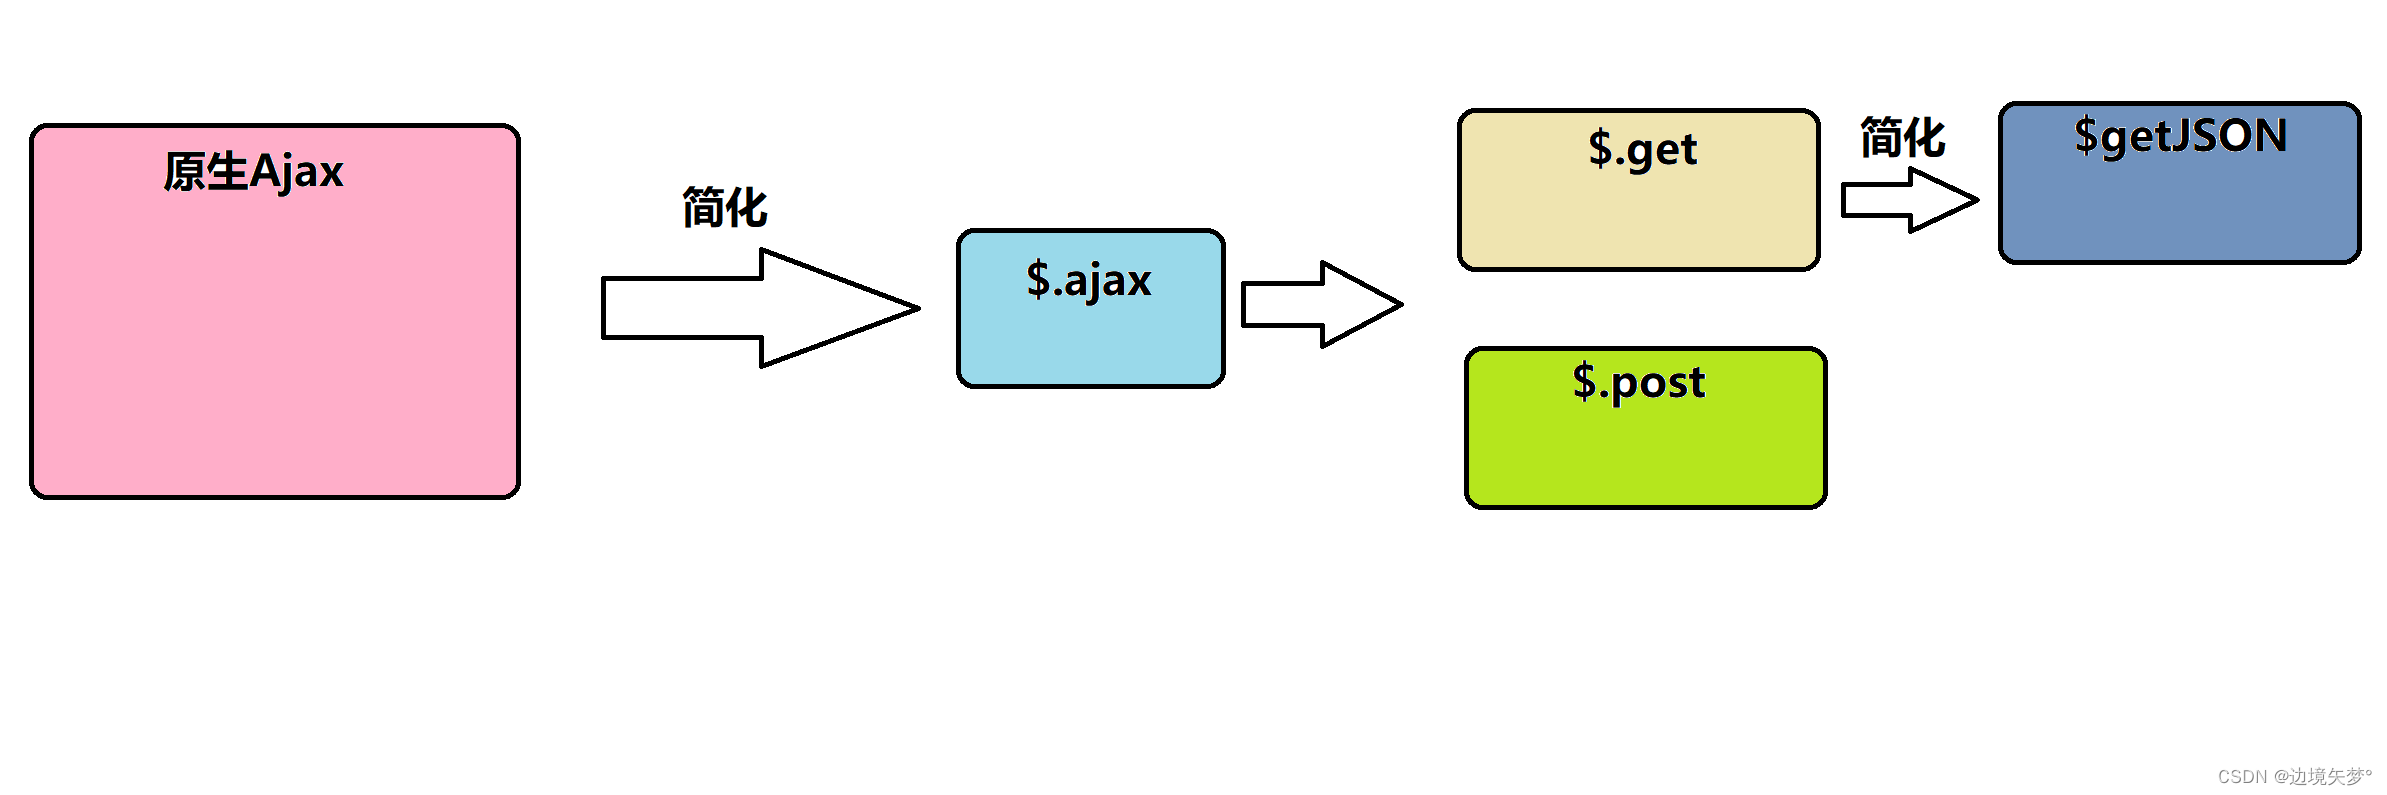 【Java】数据交换 Json 和 异步请求 Ajax